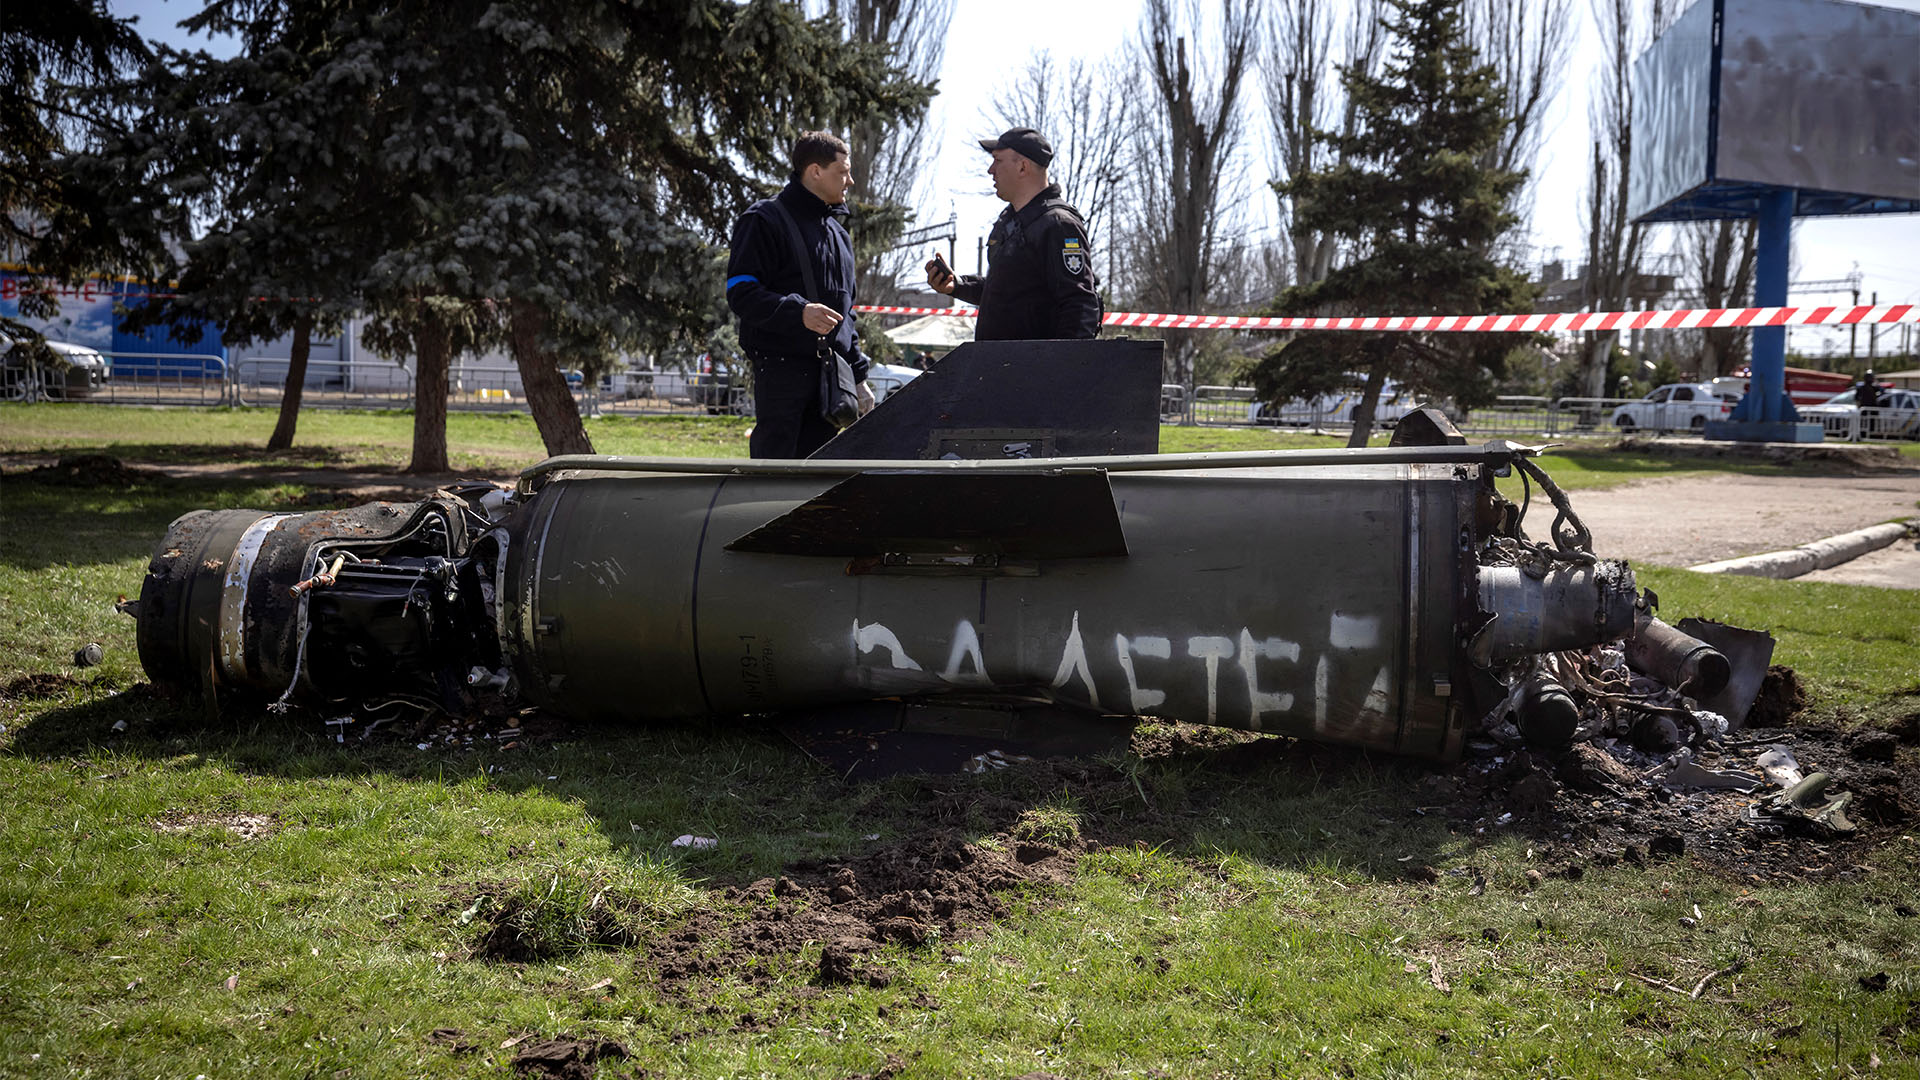 “Por nuestros niños”: la inscripción en el misil ruso que quedó parcialmene destruido (FADEL SENNA / AFP)